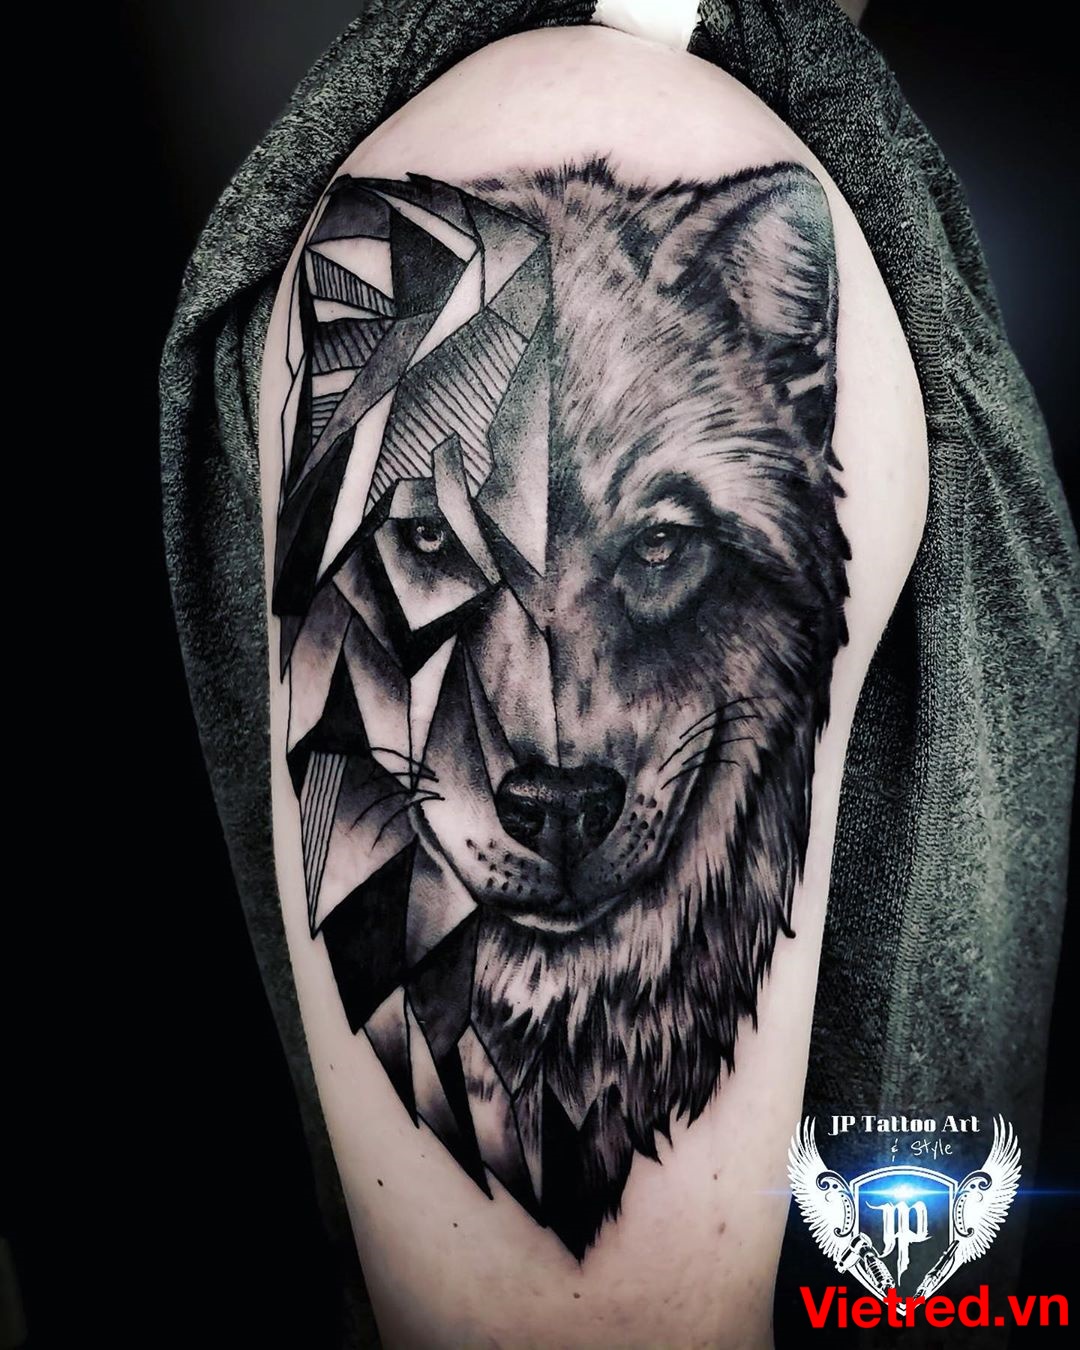 Thế Giới Tattoo - Xăm Hình Nghệ Thuật - Tattoo sói 3D | Facebook